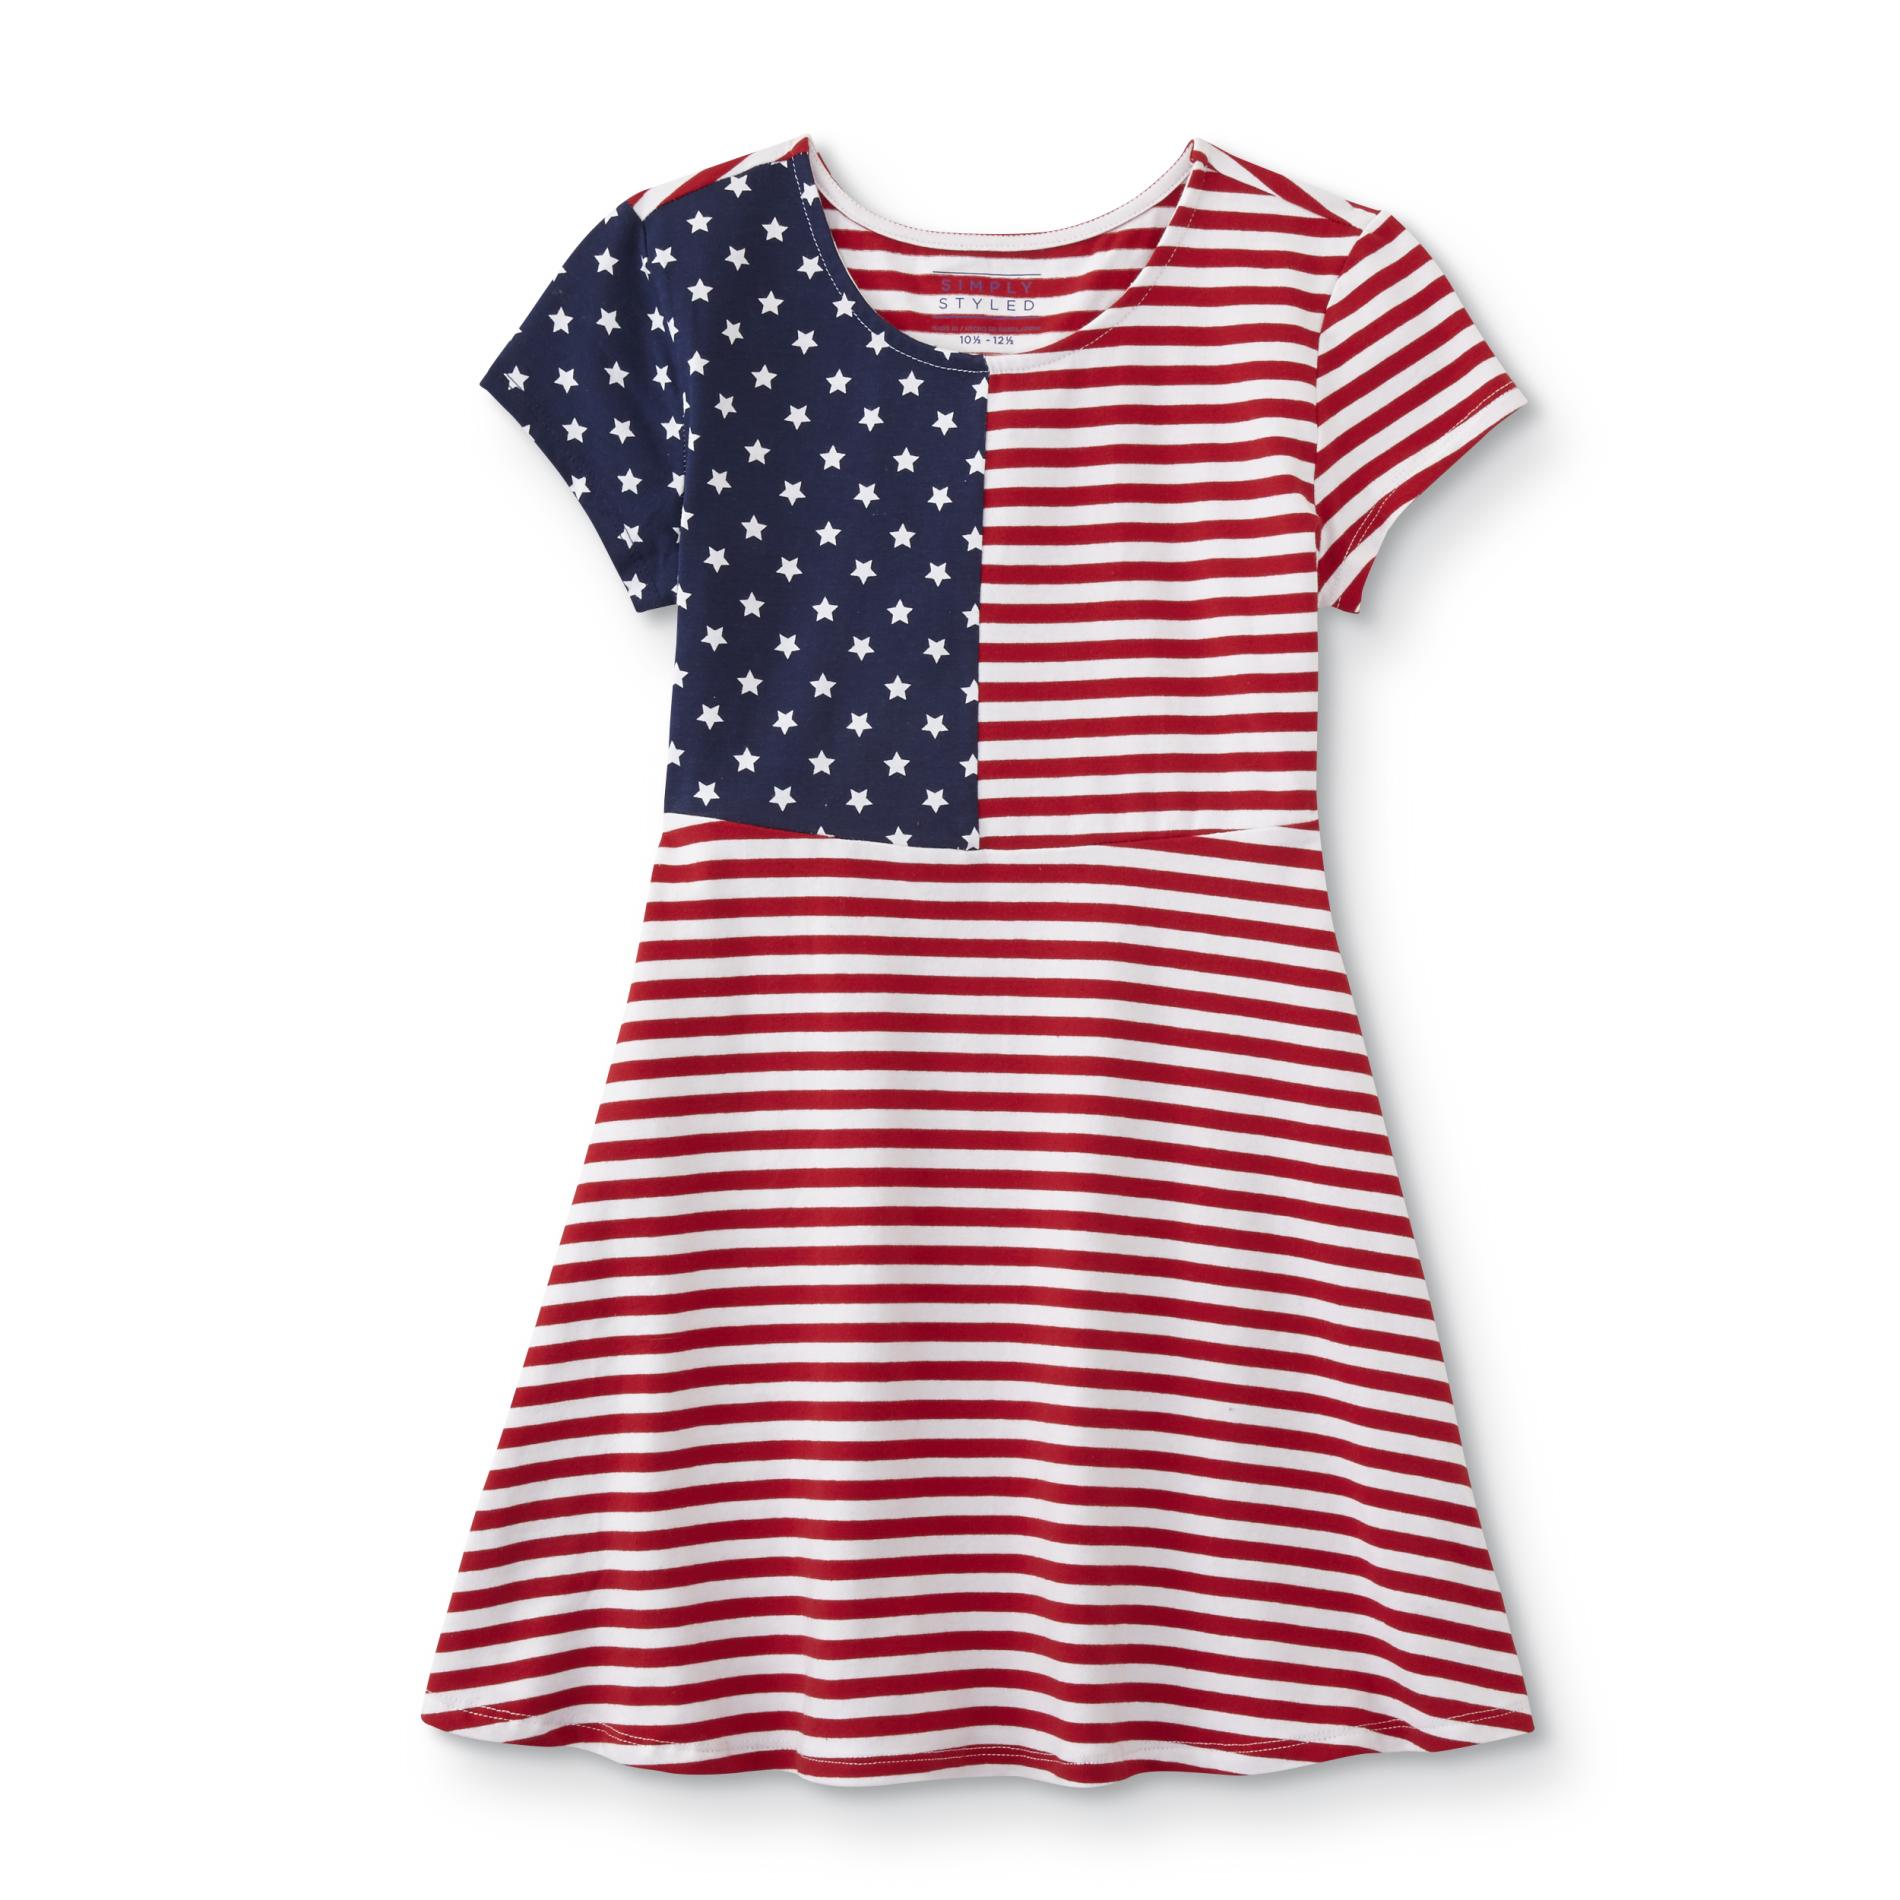 Simply Styled Girls' Short-Sleeve Skater Dress - American Flag